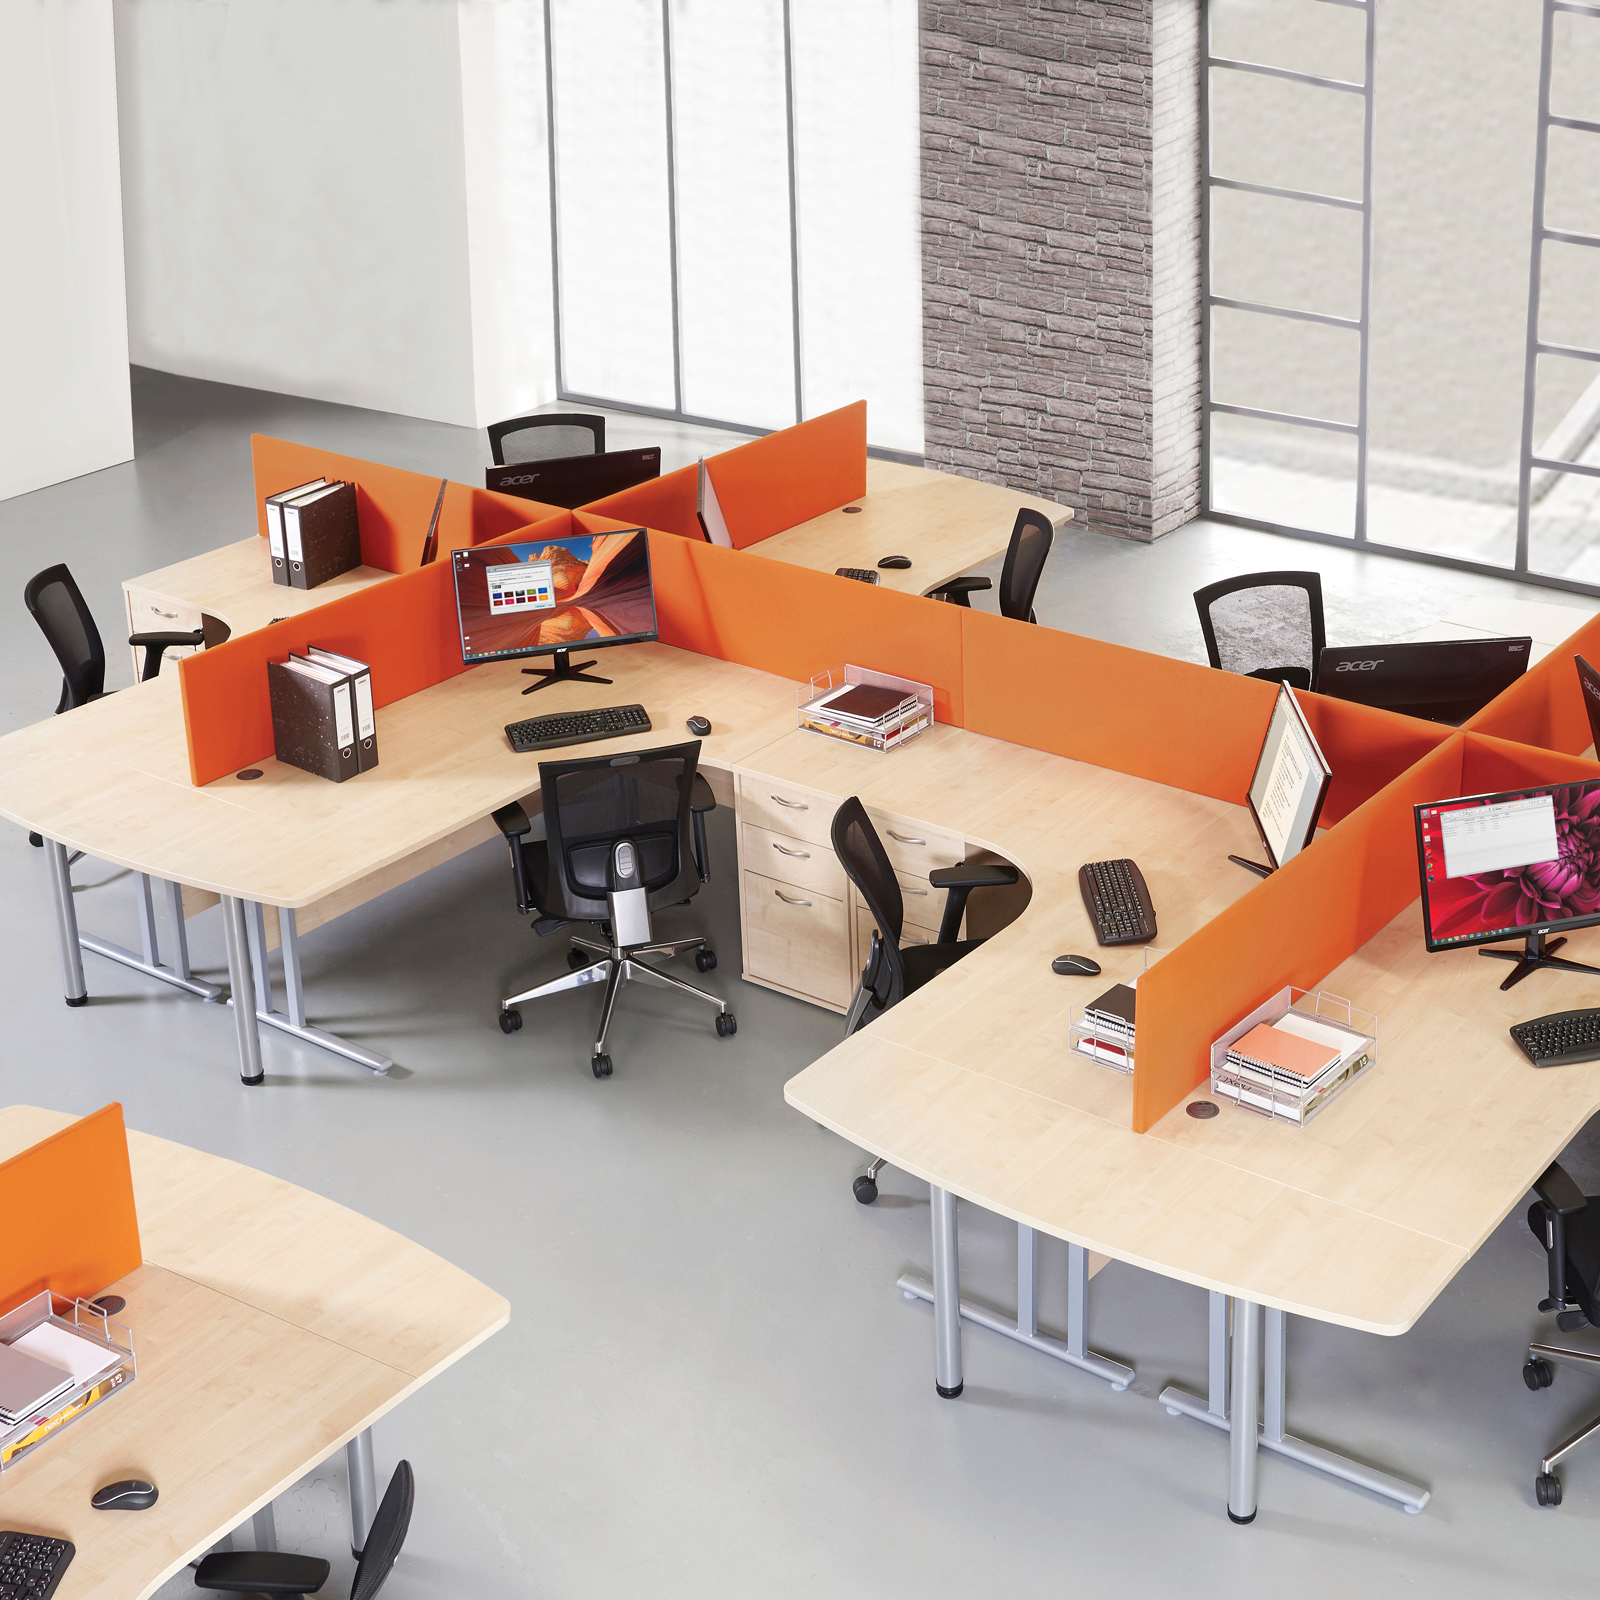 BEECH DESK 1600mm x 800mm x 730mm Cantilever Straight Office Computer Desk